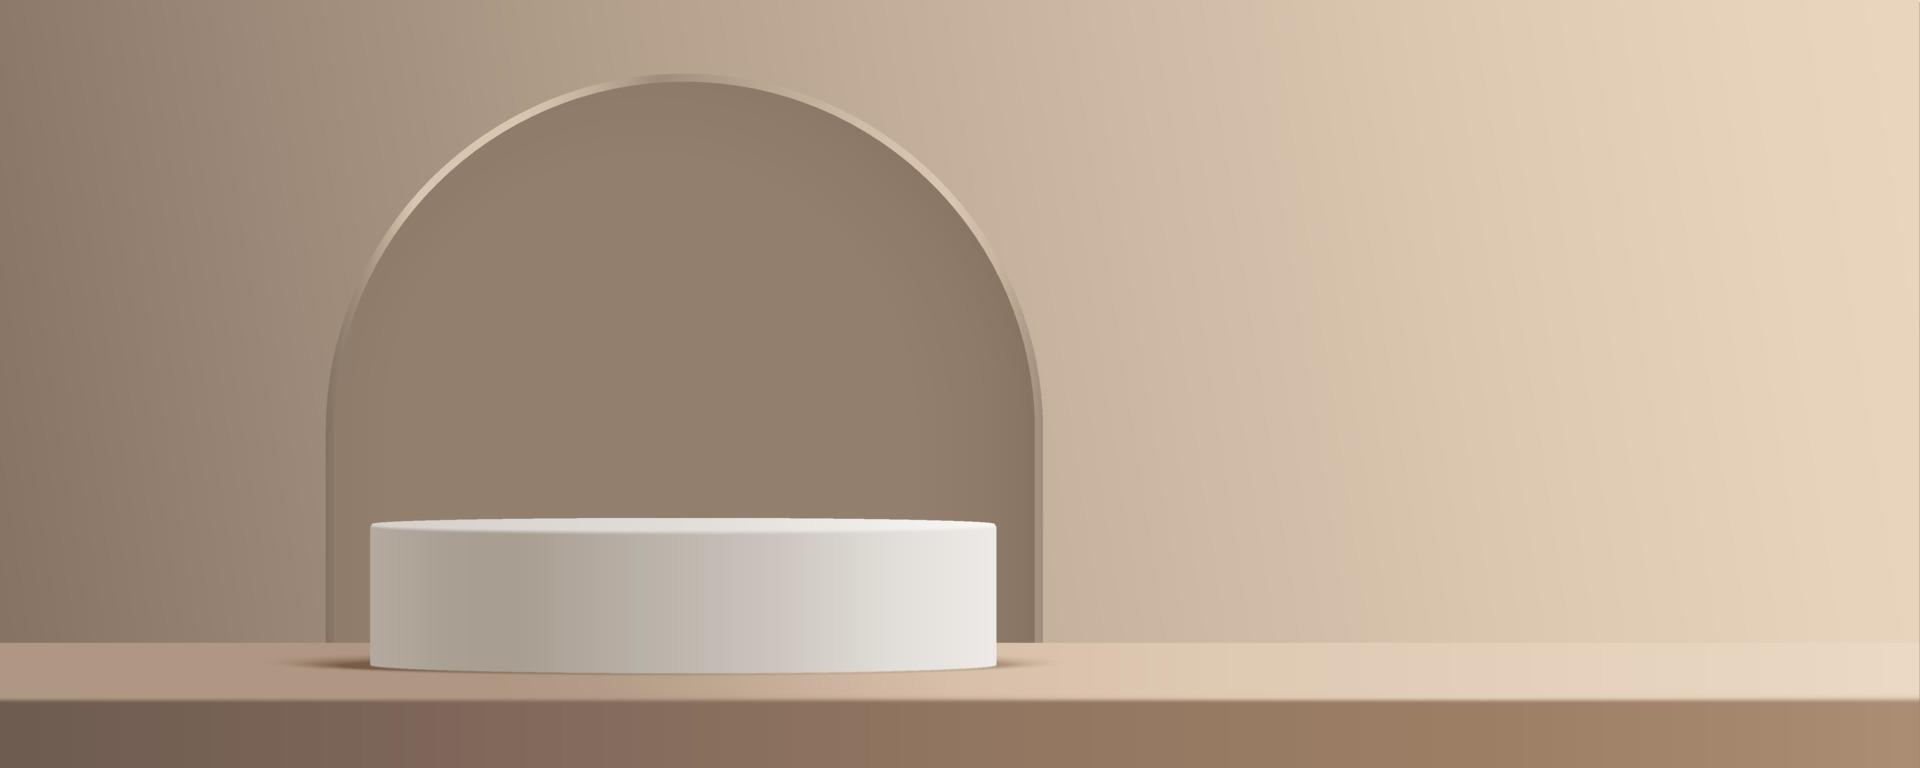 produkt podium mockup med abstrakt bakgrund på beige och vit bakgrund, vektor 3d illustration